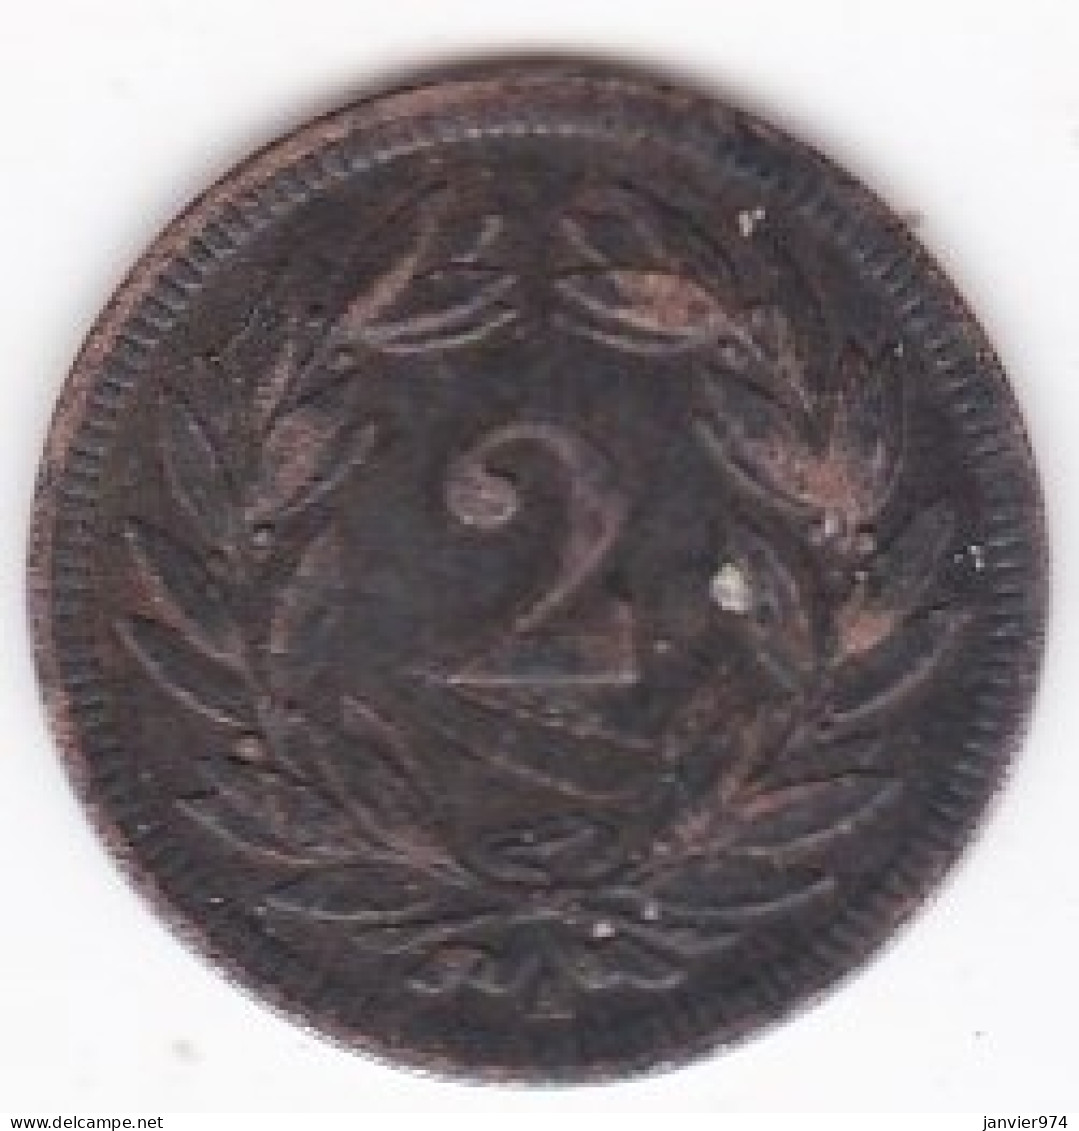 Suisse 2 Rappen 1851 A Paris , En Bronze , KM# 4 - 2 Rappen